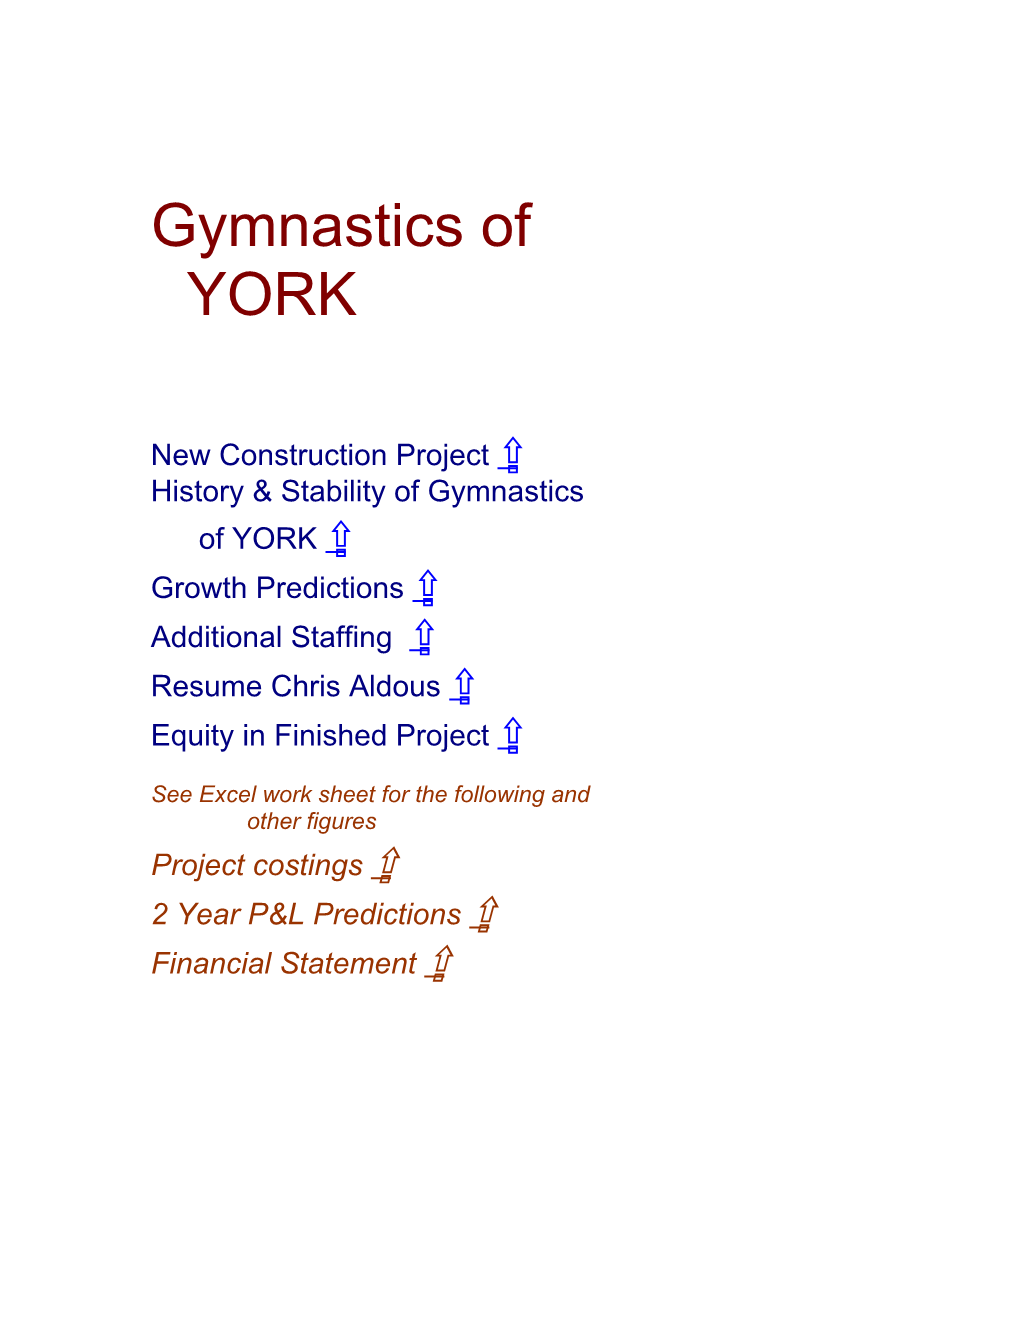 Gymnastics of YORK